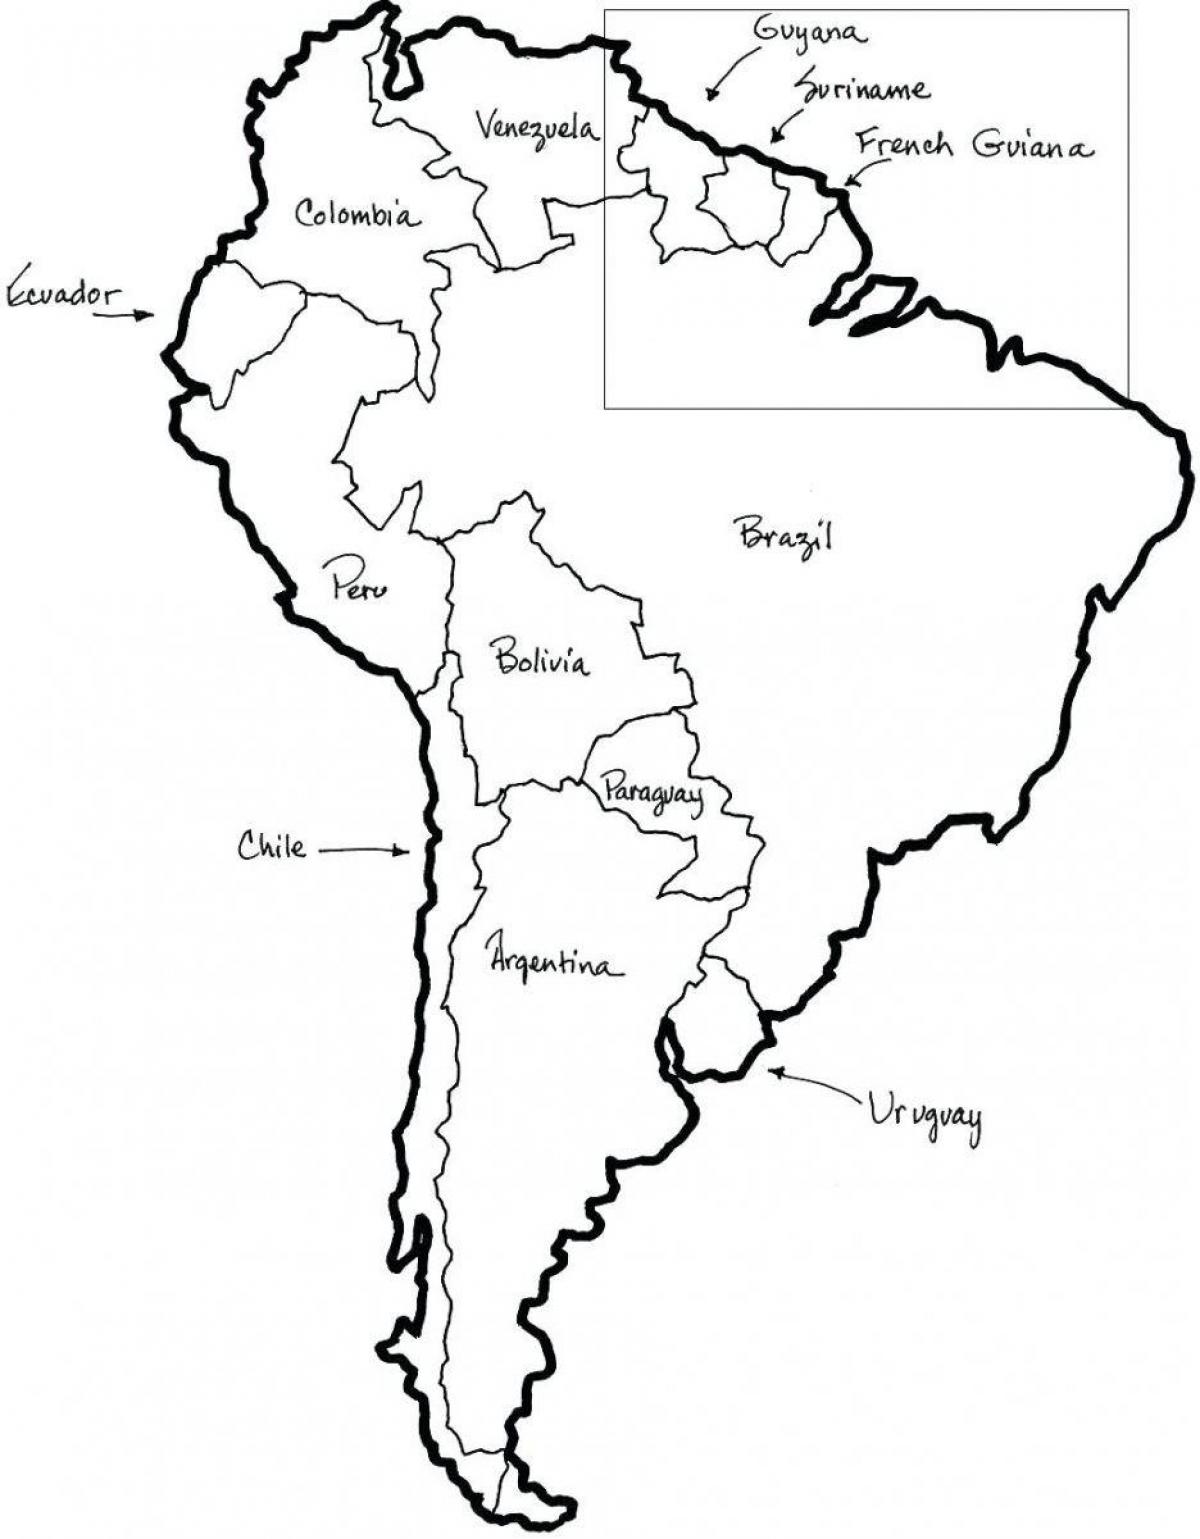 Mappa del Cile del